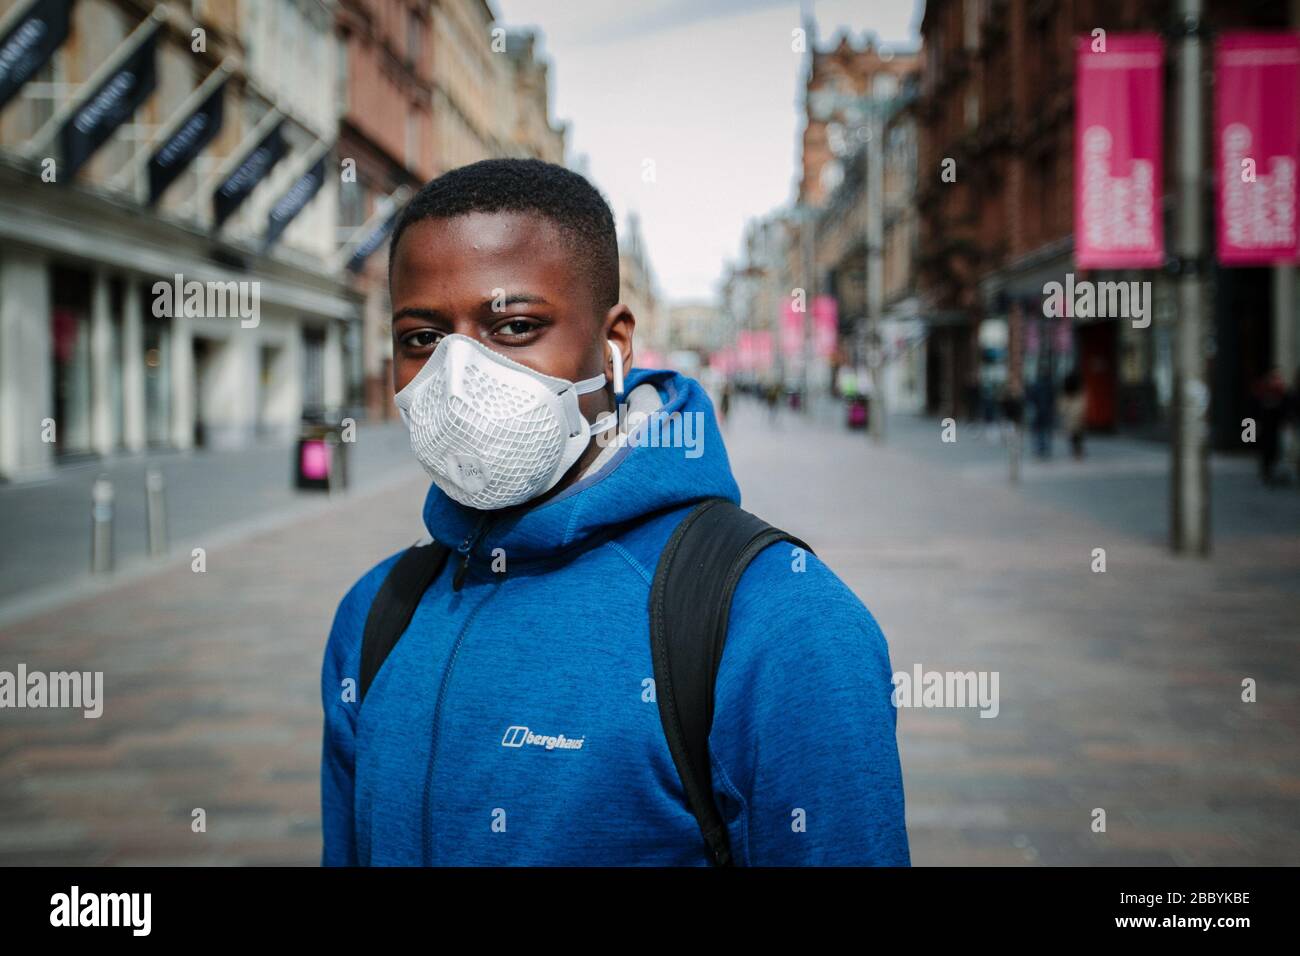 Uomo che indossa la maschera facciale durante il blocco pandemico del virus Corona, nel centro di Glasgow, Regno Unito. Foto Stock